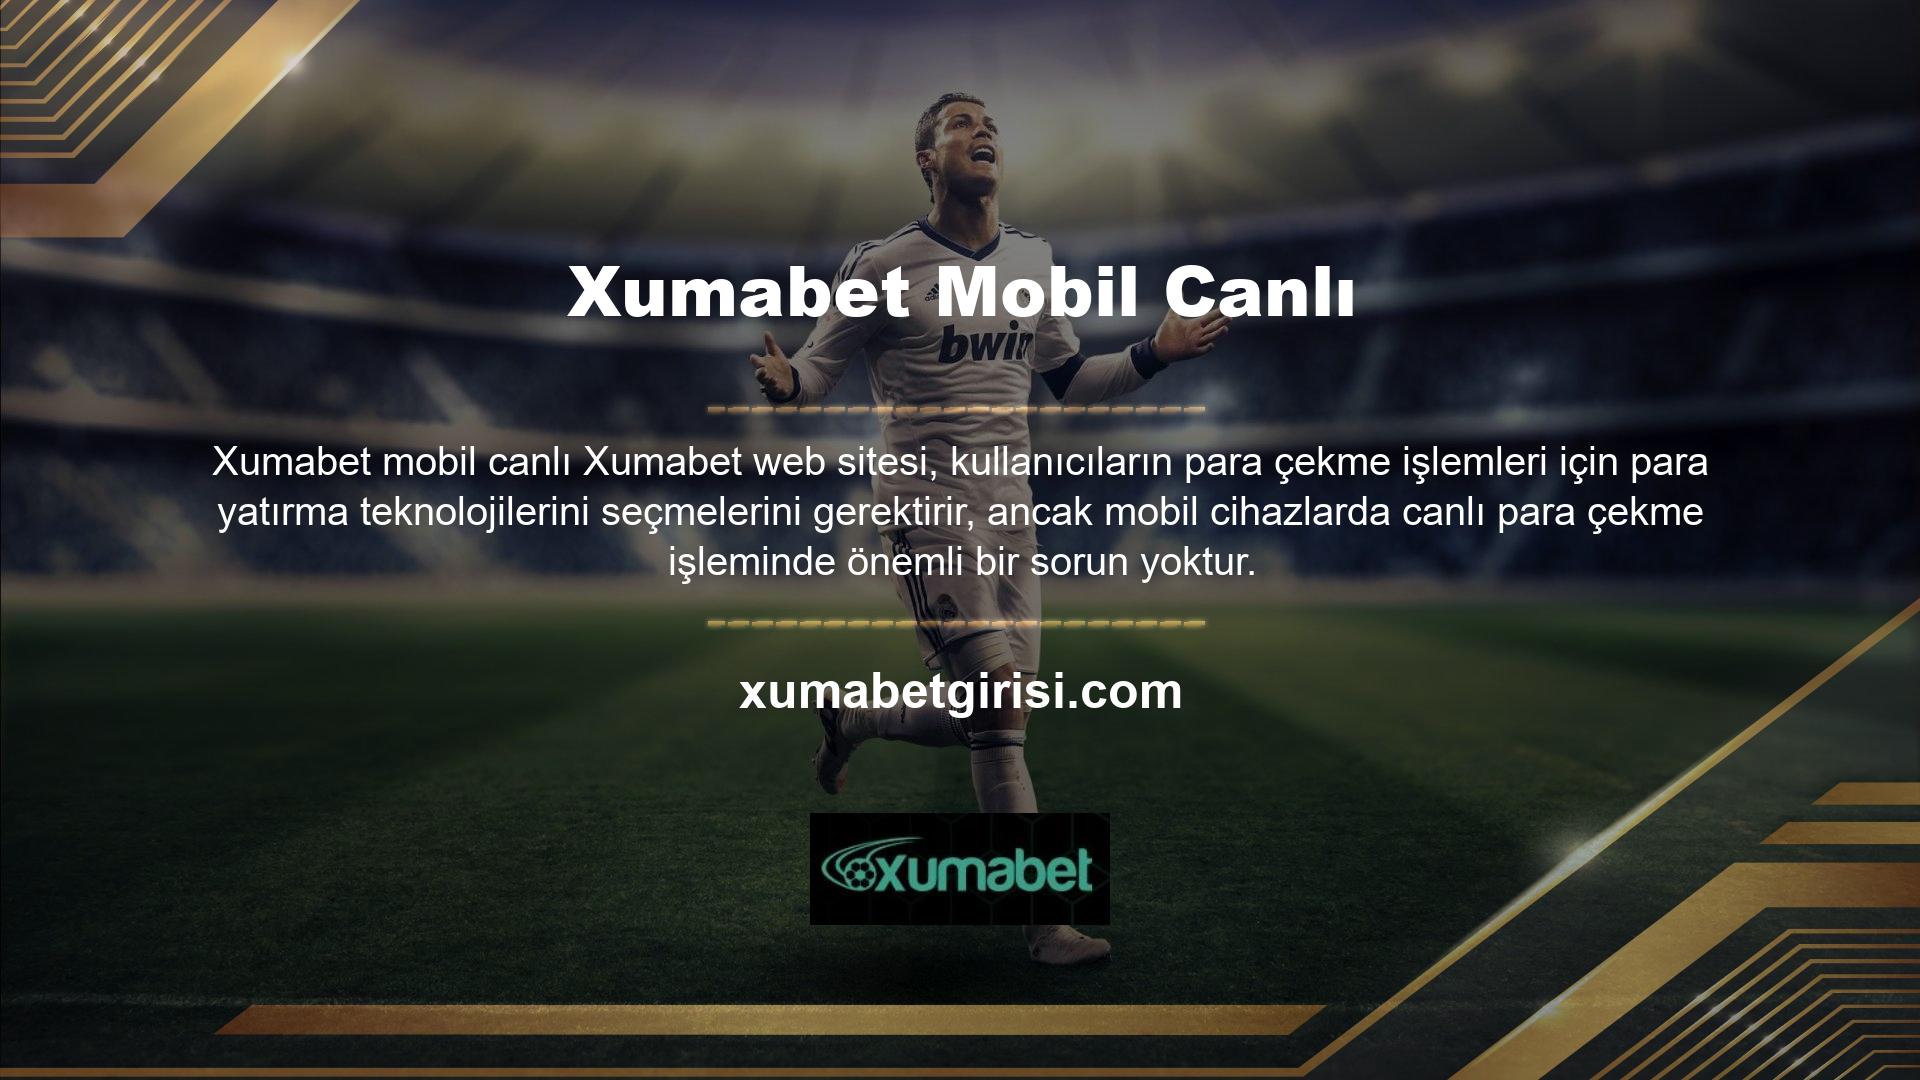 Xumabet mobil canlı web sitesi platformunun hem masaüstü hem de mobil web sitesi sürümü mevcuttur